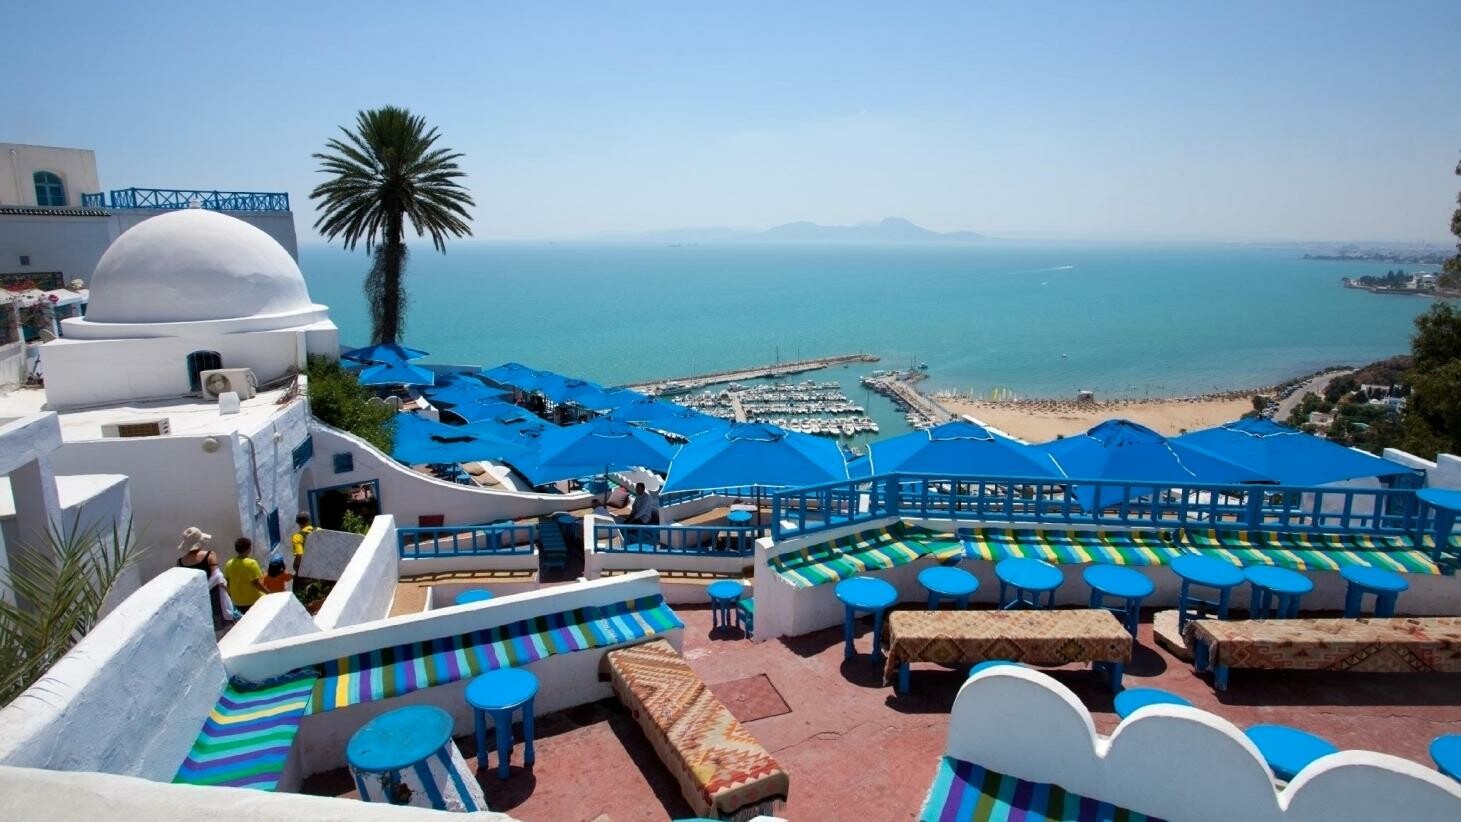 لرحلة لا تنسى.. إليكم أشهر المناطق السياحية والمنتجعات الفاخرة في تونس 